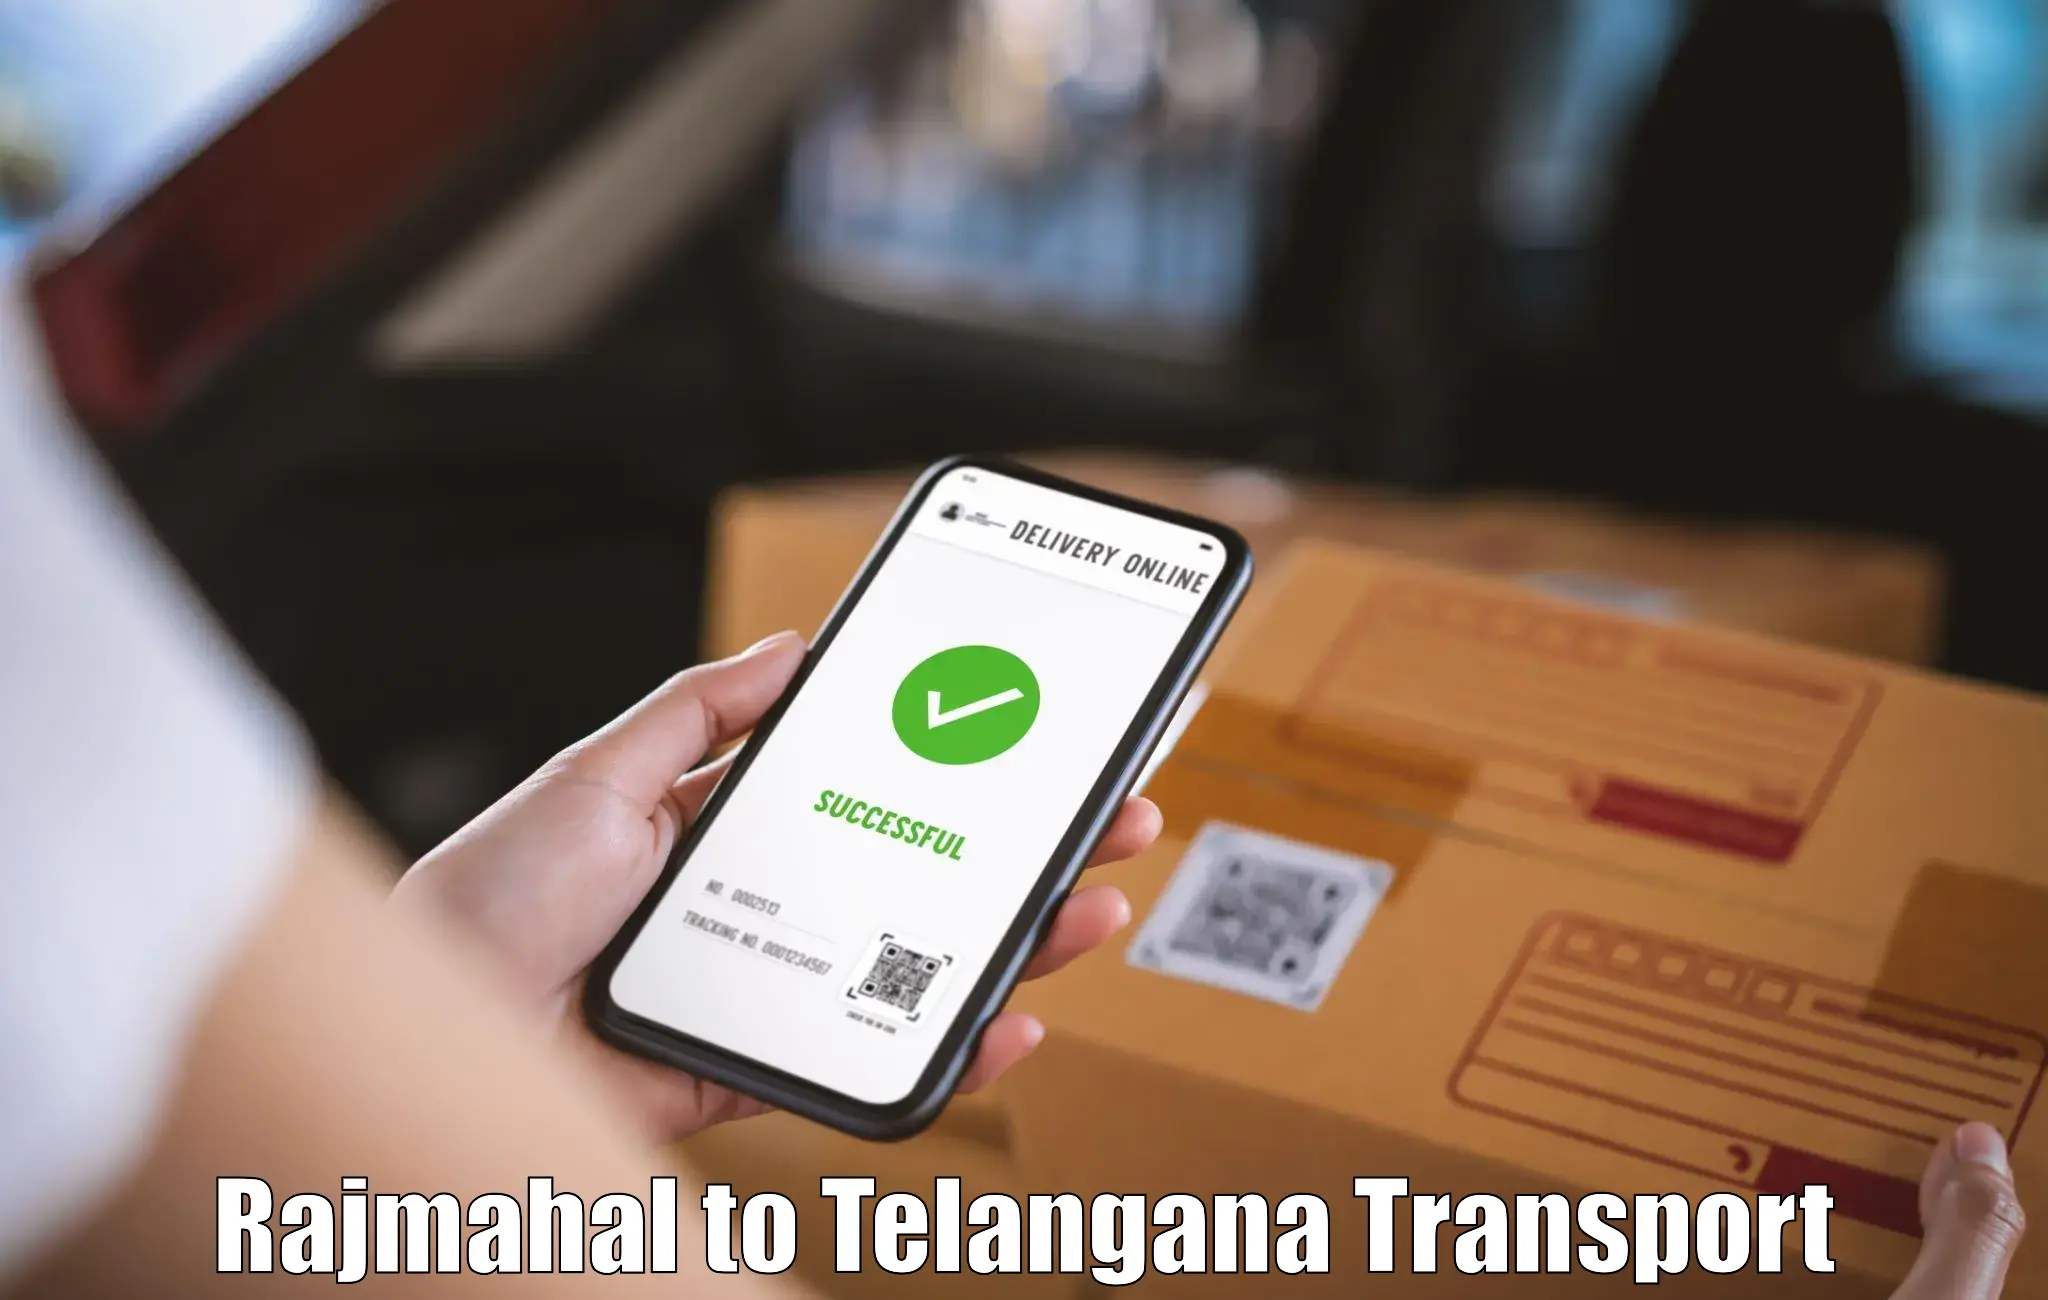 Nearest transport service Rajmahal to Devarakonda